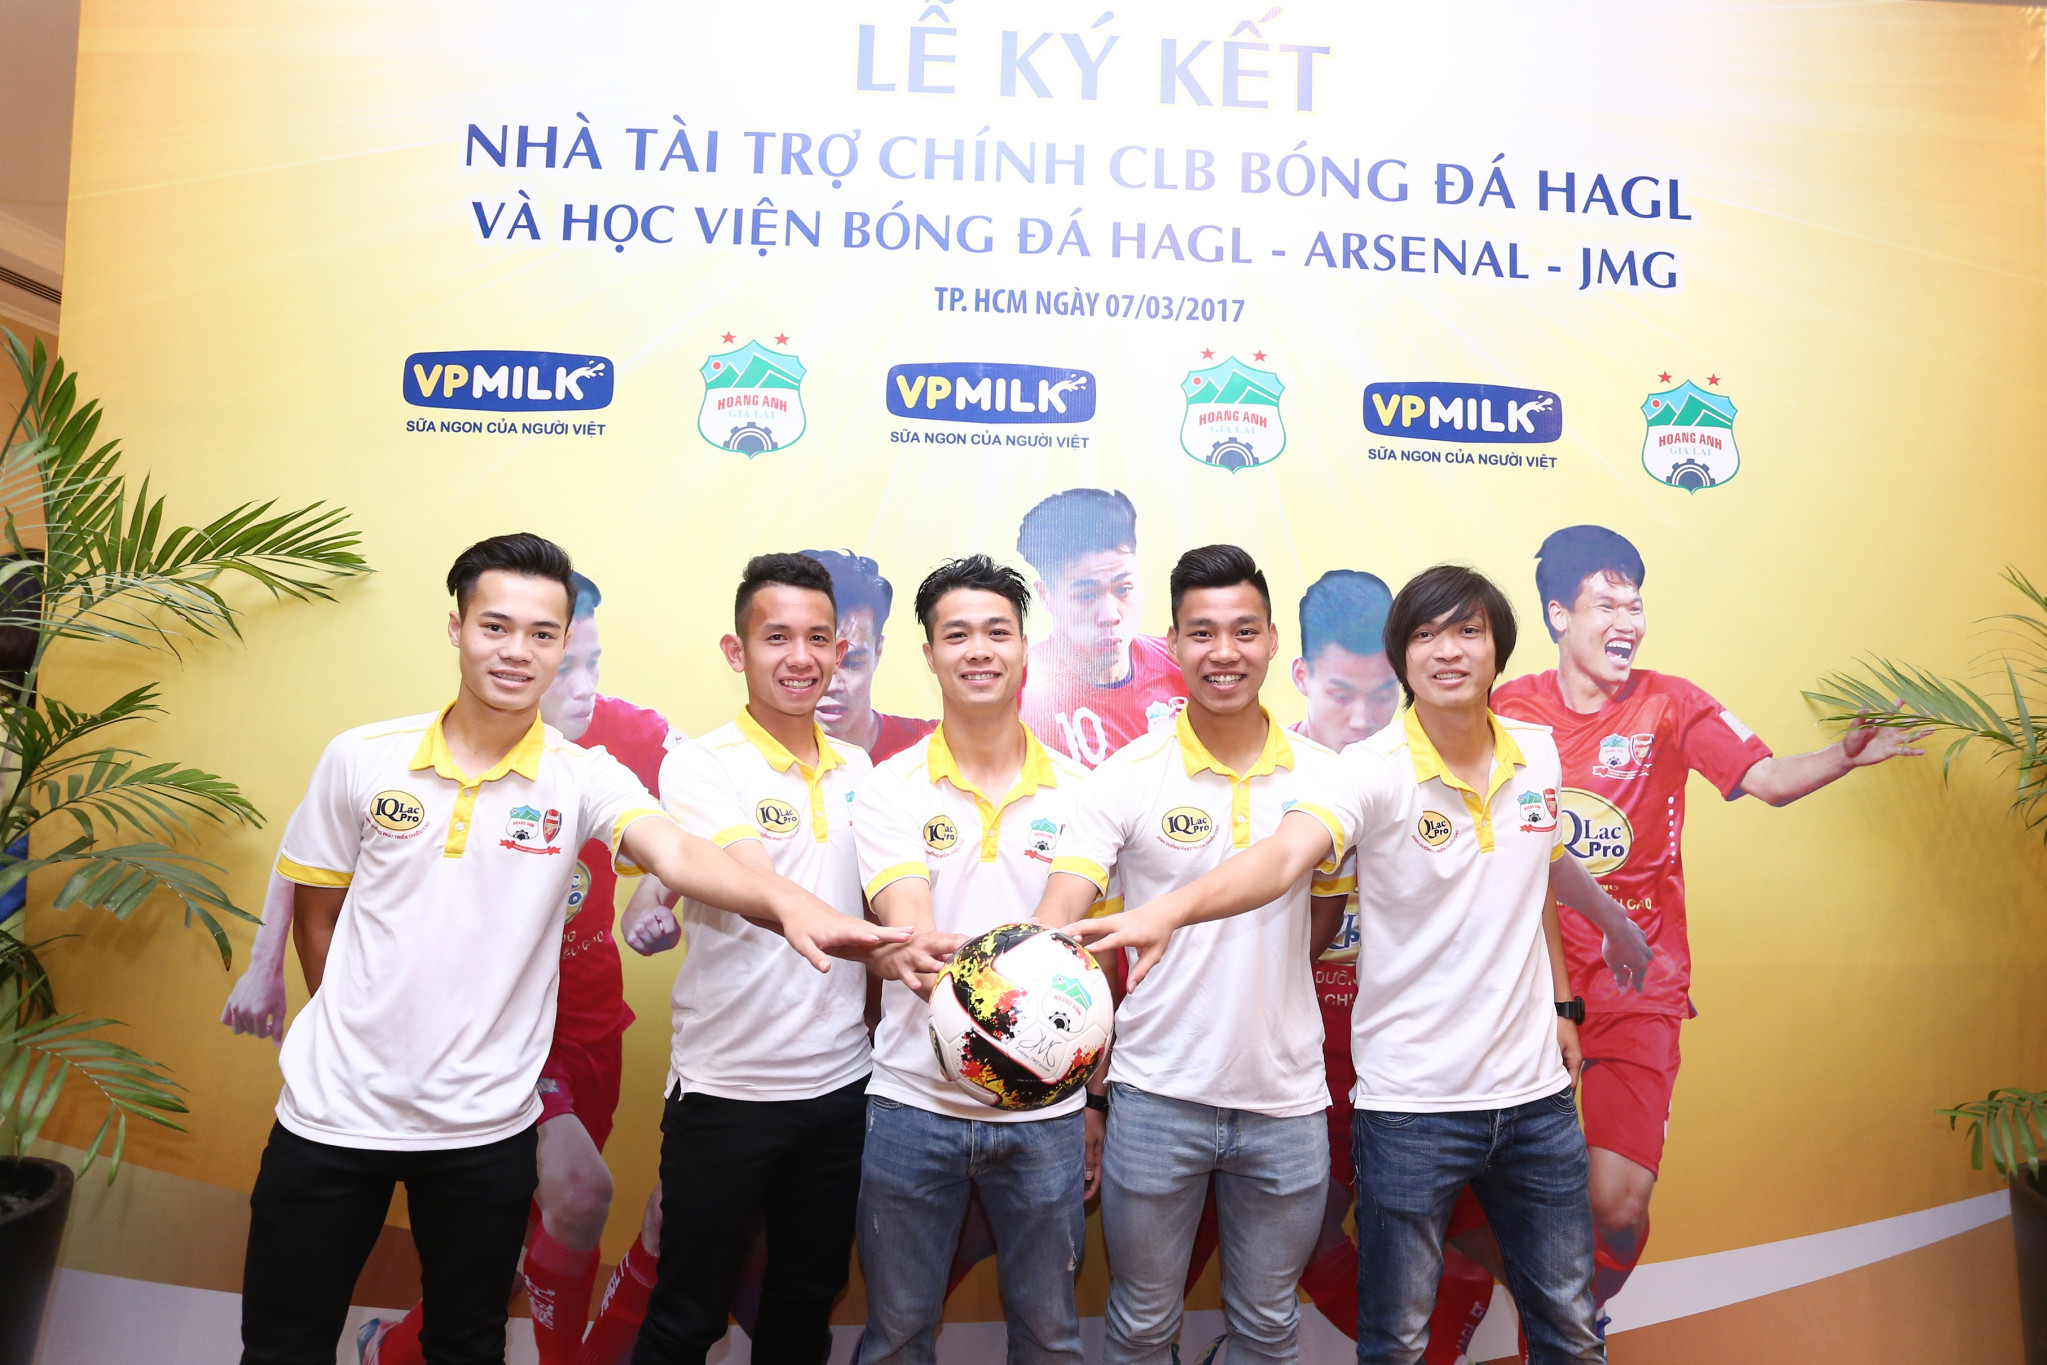 tài năng bóng đá trẻ Việt Nam và tạo điều kiện cho các cầu thủ được cọ sát và học hỏi kinh nghiệm, VPMilk cùng Câu lạc bộ Hoàng Anh Gia Lai không ngừng tìm kiếm nhiều cơ hội tập huấn, thi đấu ở nước ngoài cho câu lạc bộ